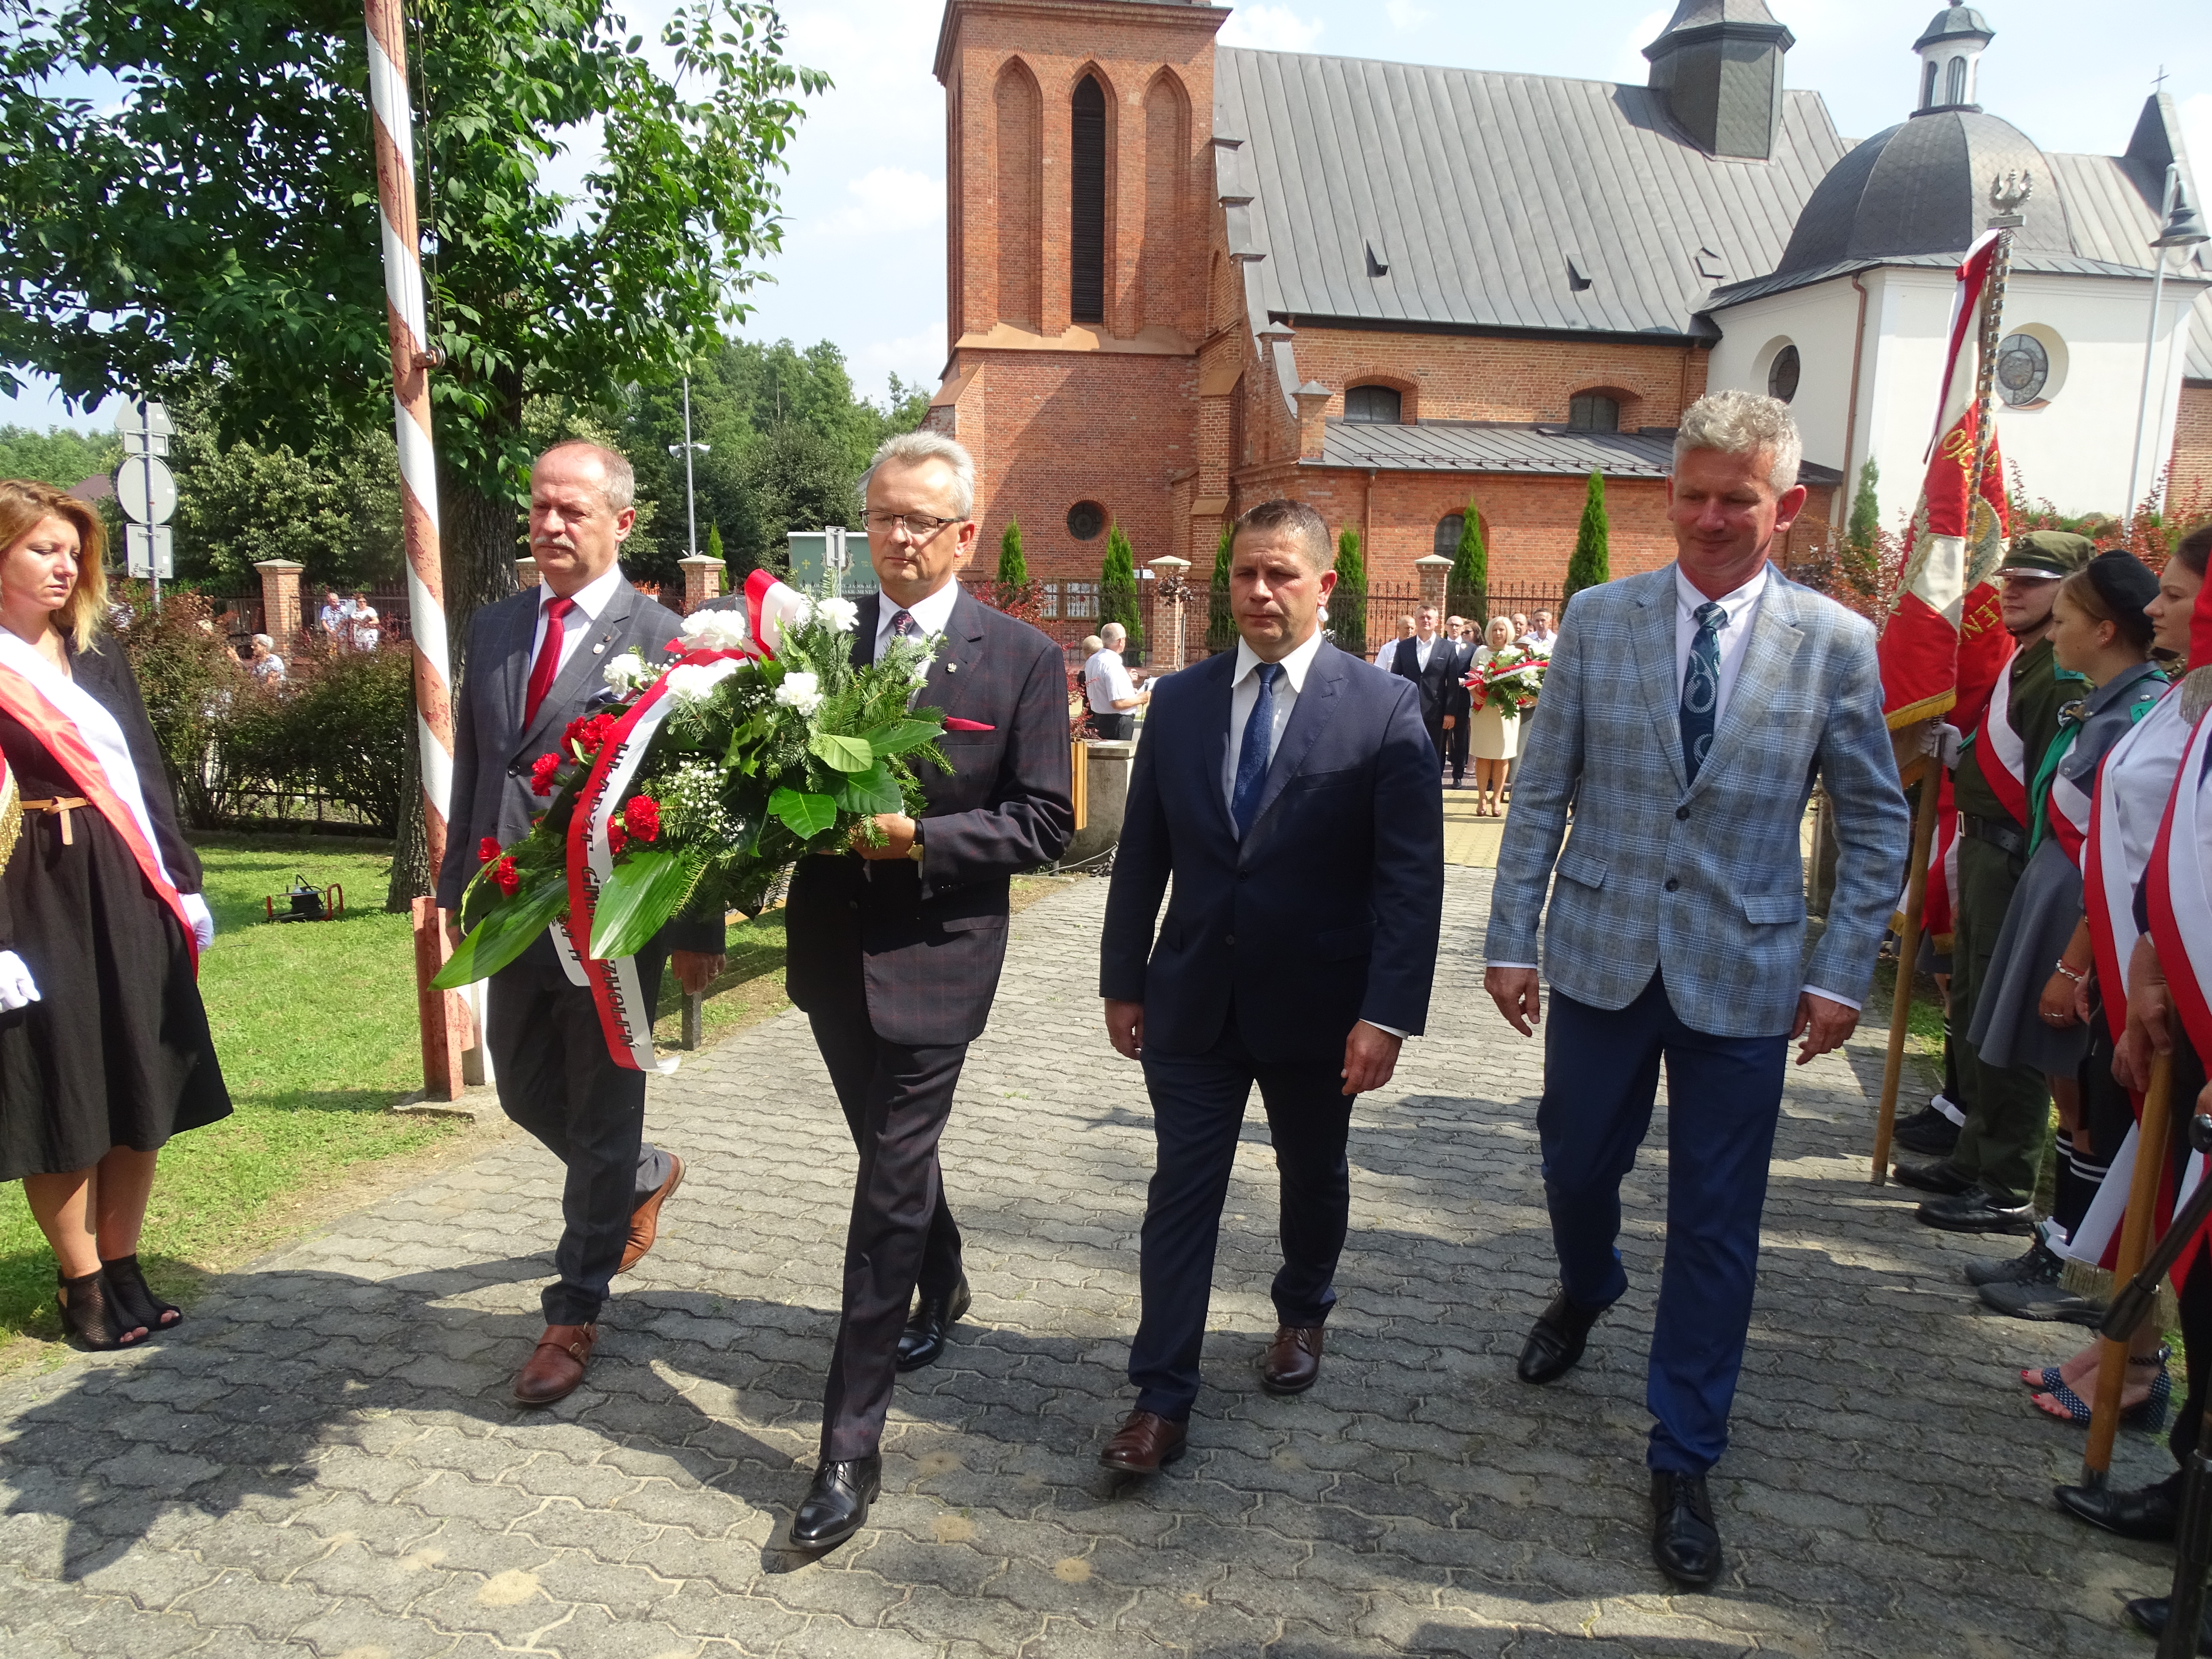 Kwiaty przy pomniku złożyli przedstawiciele Gminy Zwoleń na czele z Burmistrzem Zwolenia Arkadiuszem Sulimą oraz Przewodniczącym Rady Miejskiej Pawłem Sobieszkiem.